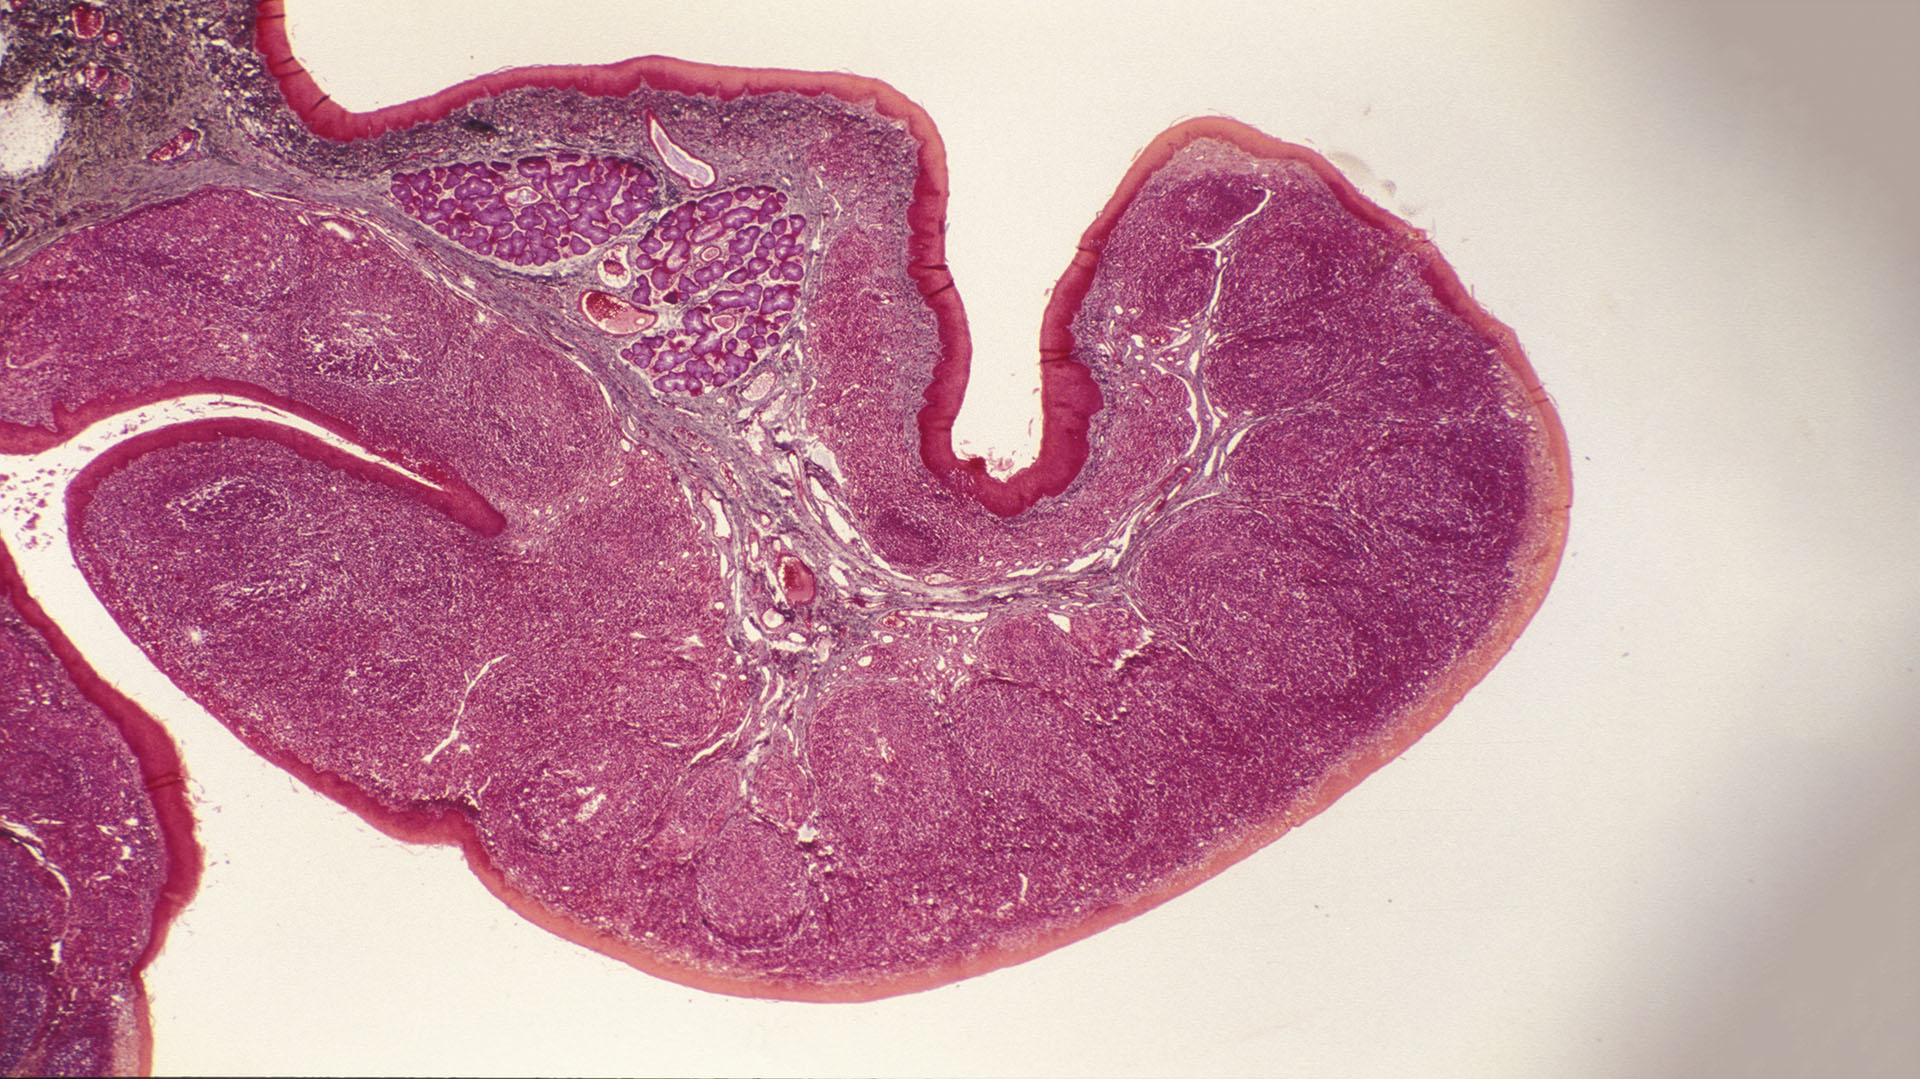 A partir de los 3 años las amígdalas palatinas pueden alojar infecciones bacterianas como, por ejemplo, el estreptococo betahemolítico (Getty Images)